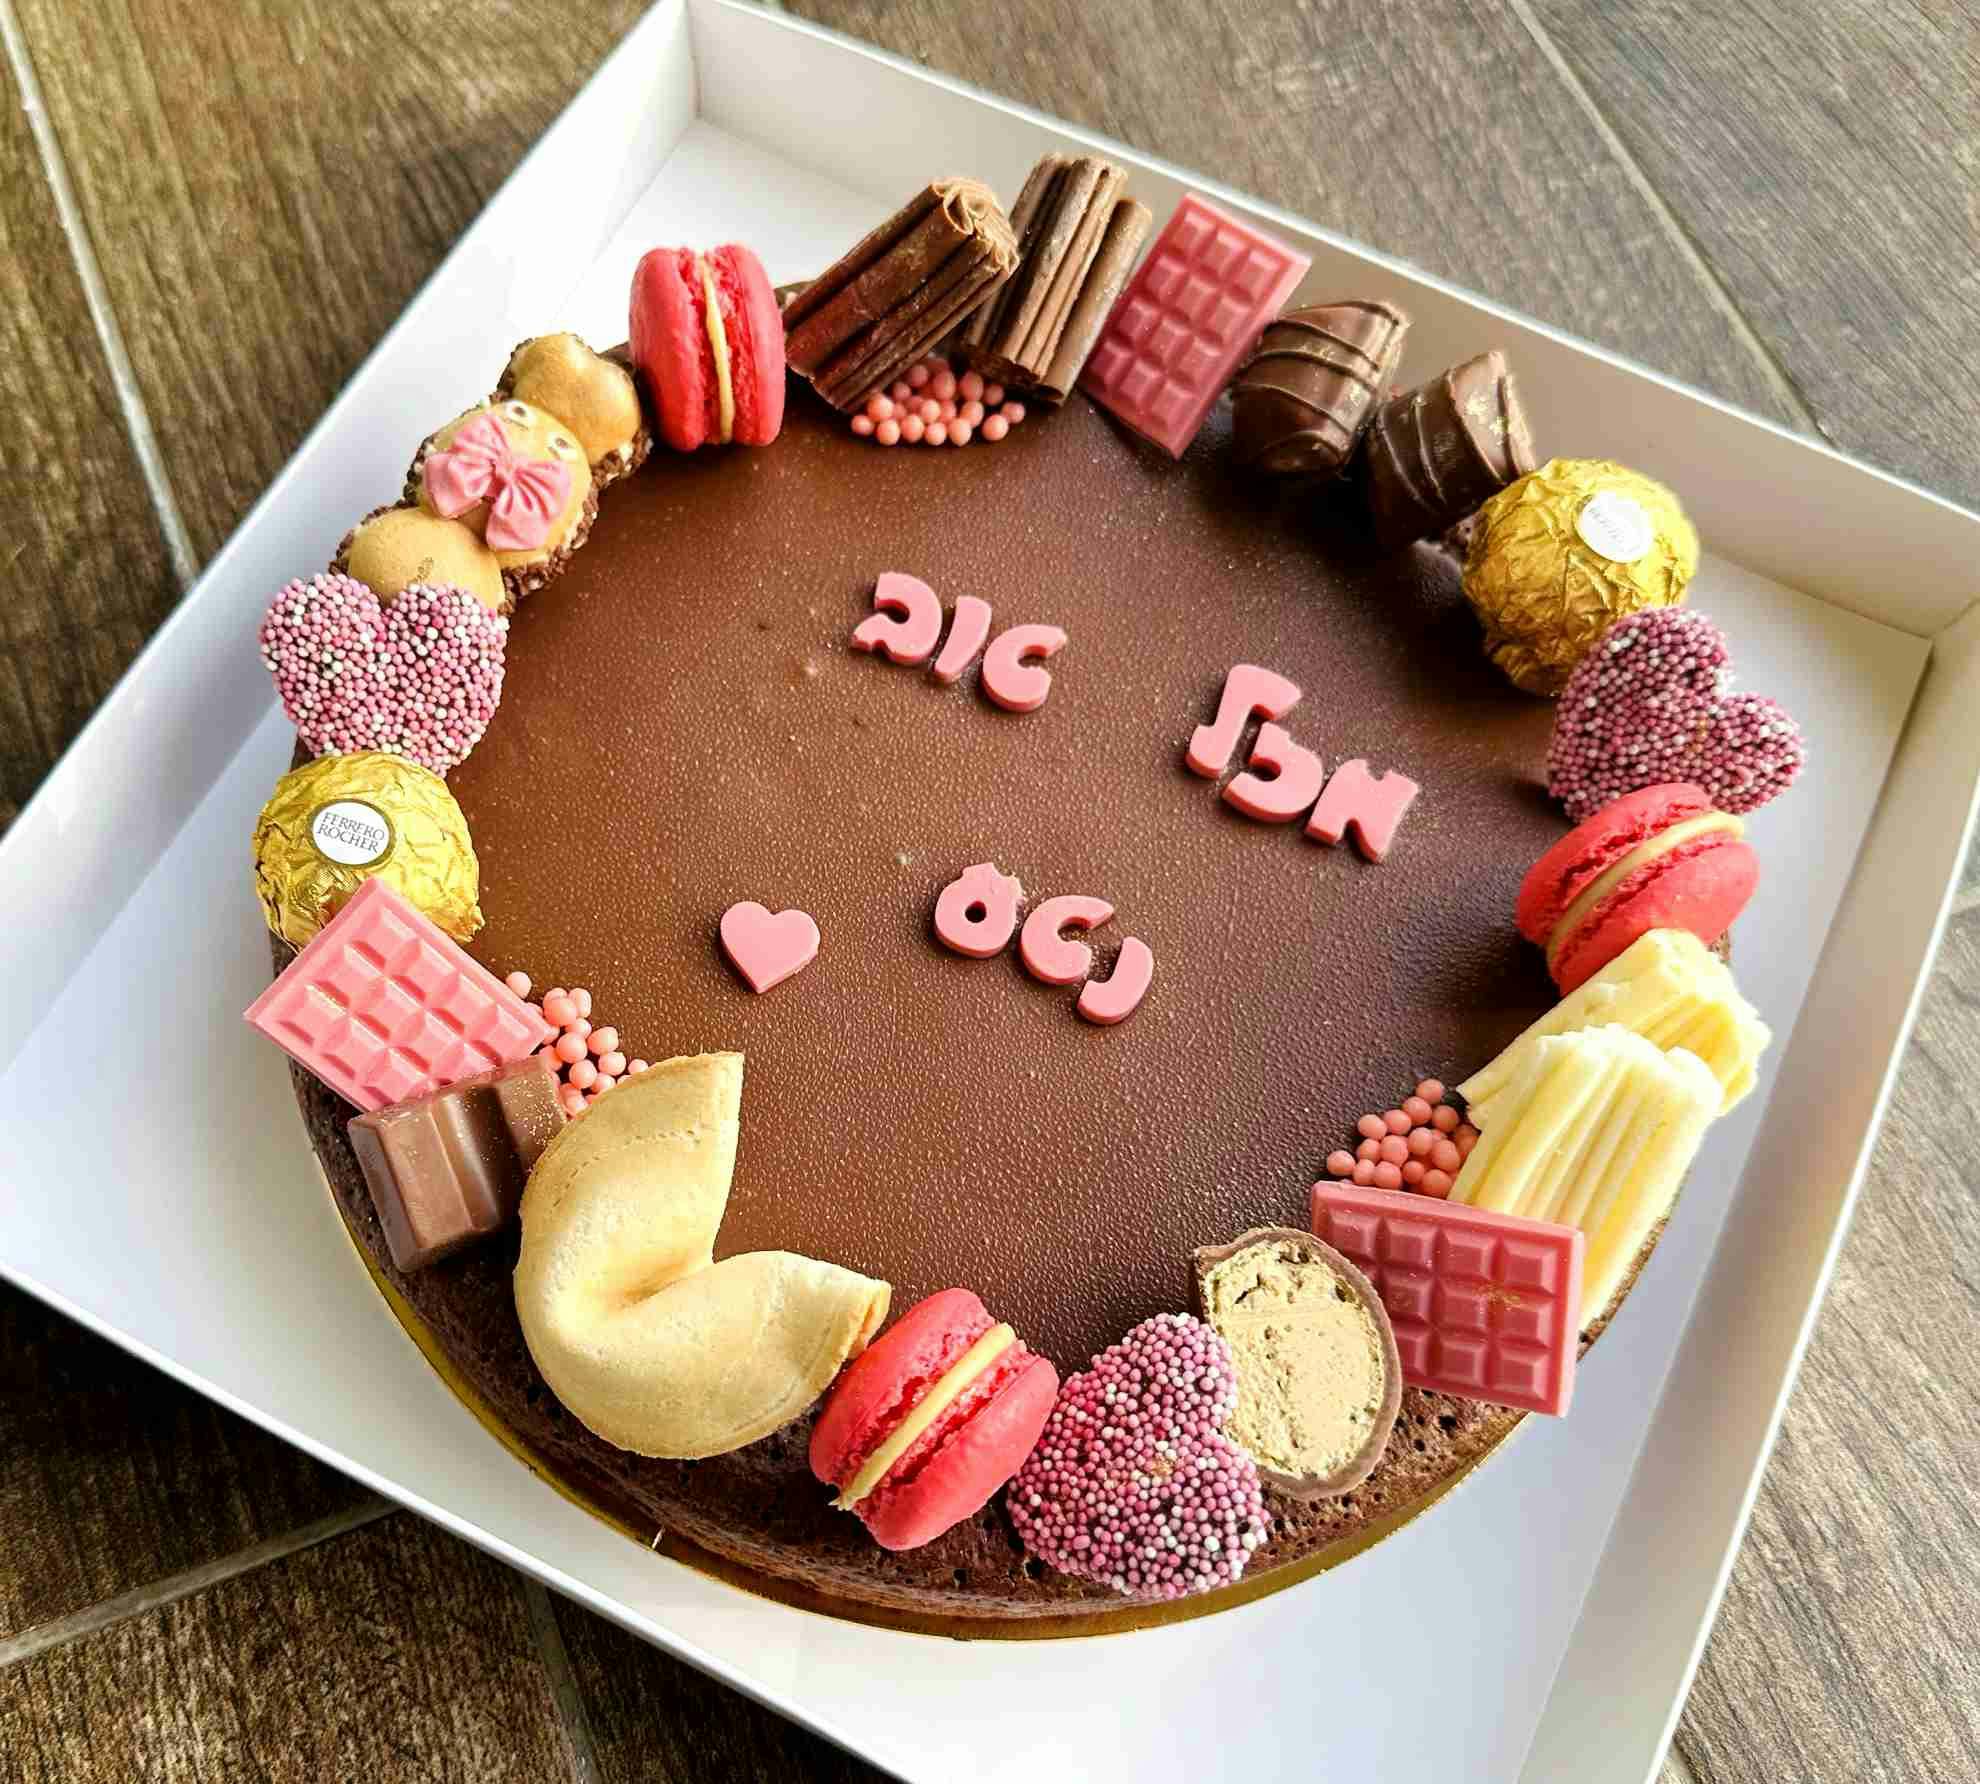 עוגת פאדג׳ שוקולד - עם גנאש שוקולד בלגי
קישוטי שוקולד והקדשה קצרה
** ללא קמח ** מכילה שקדים